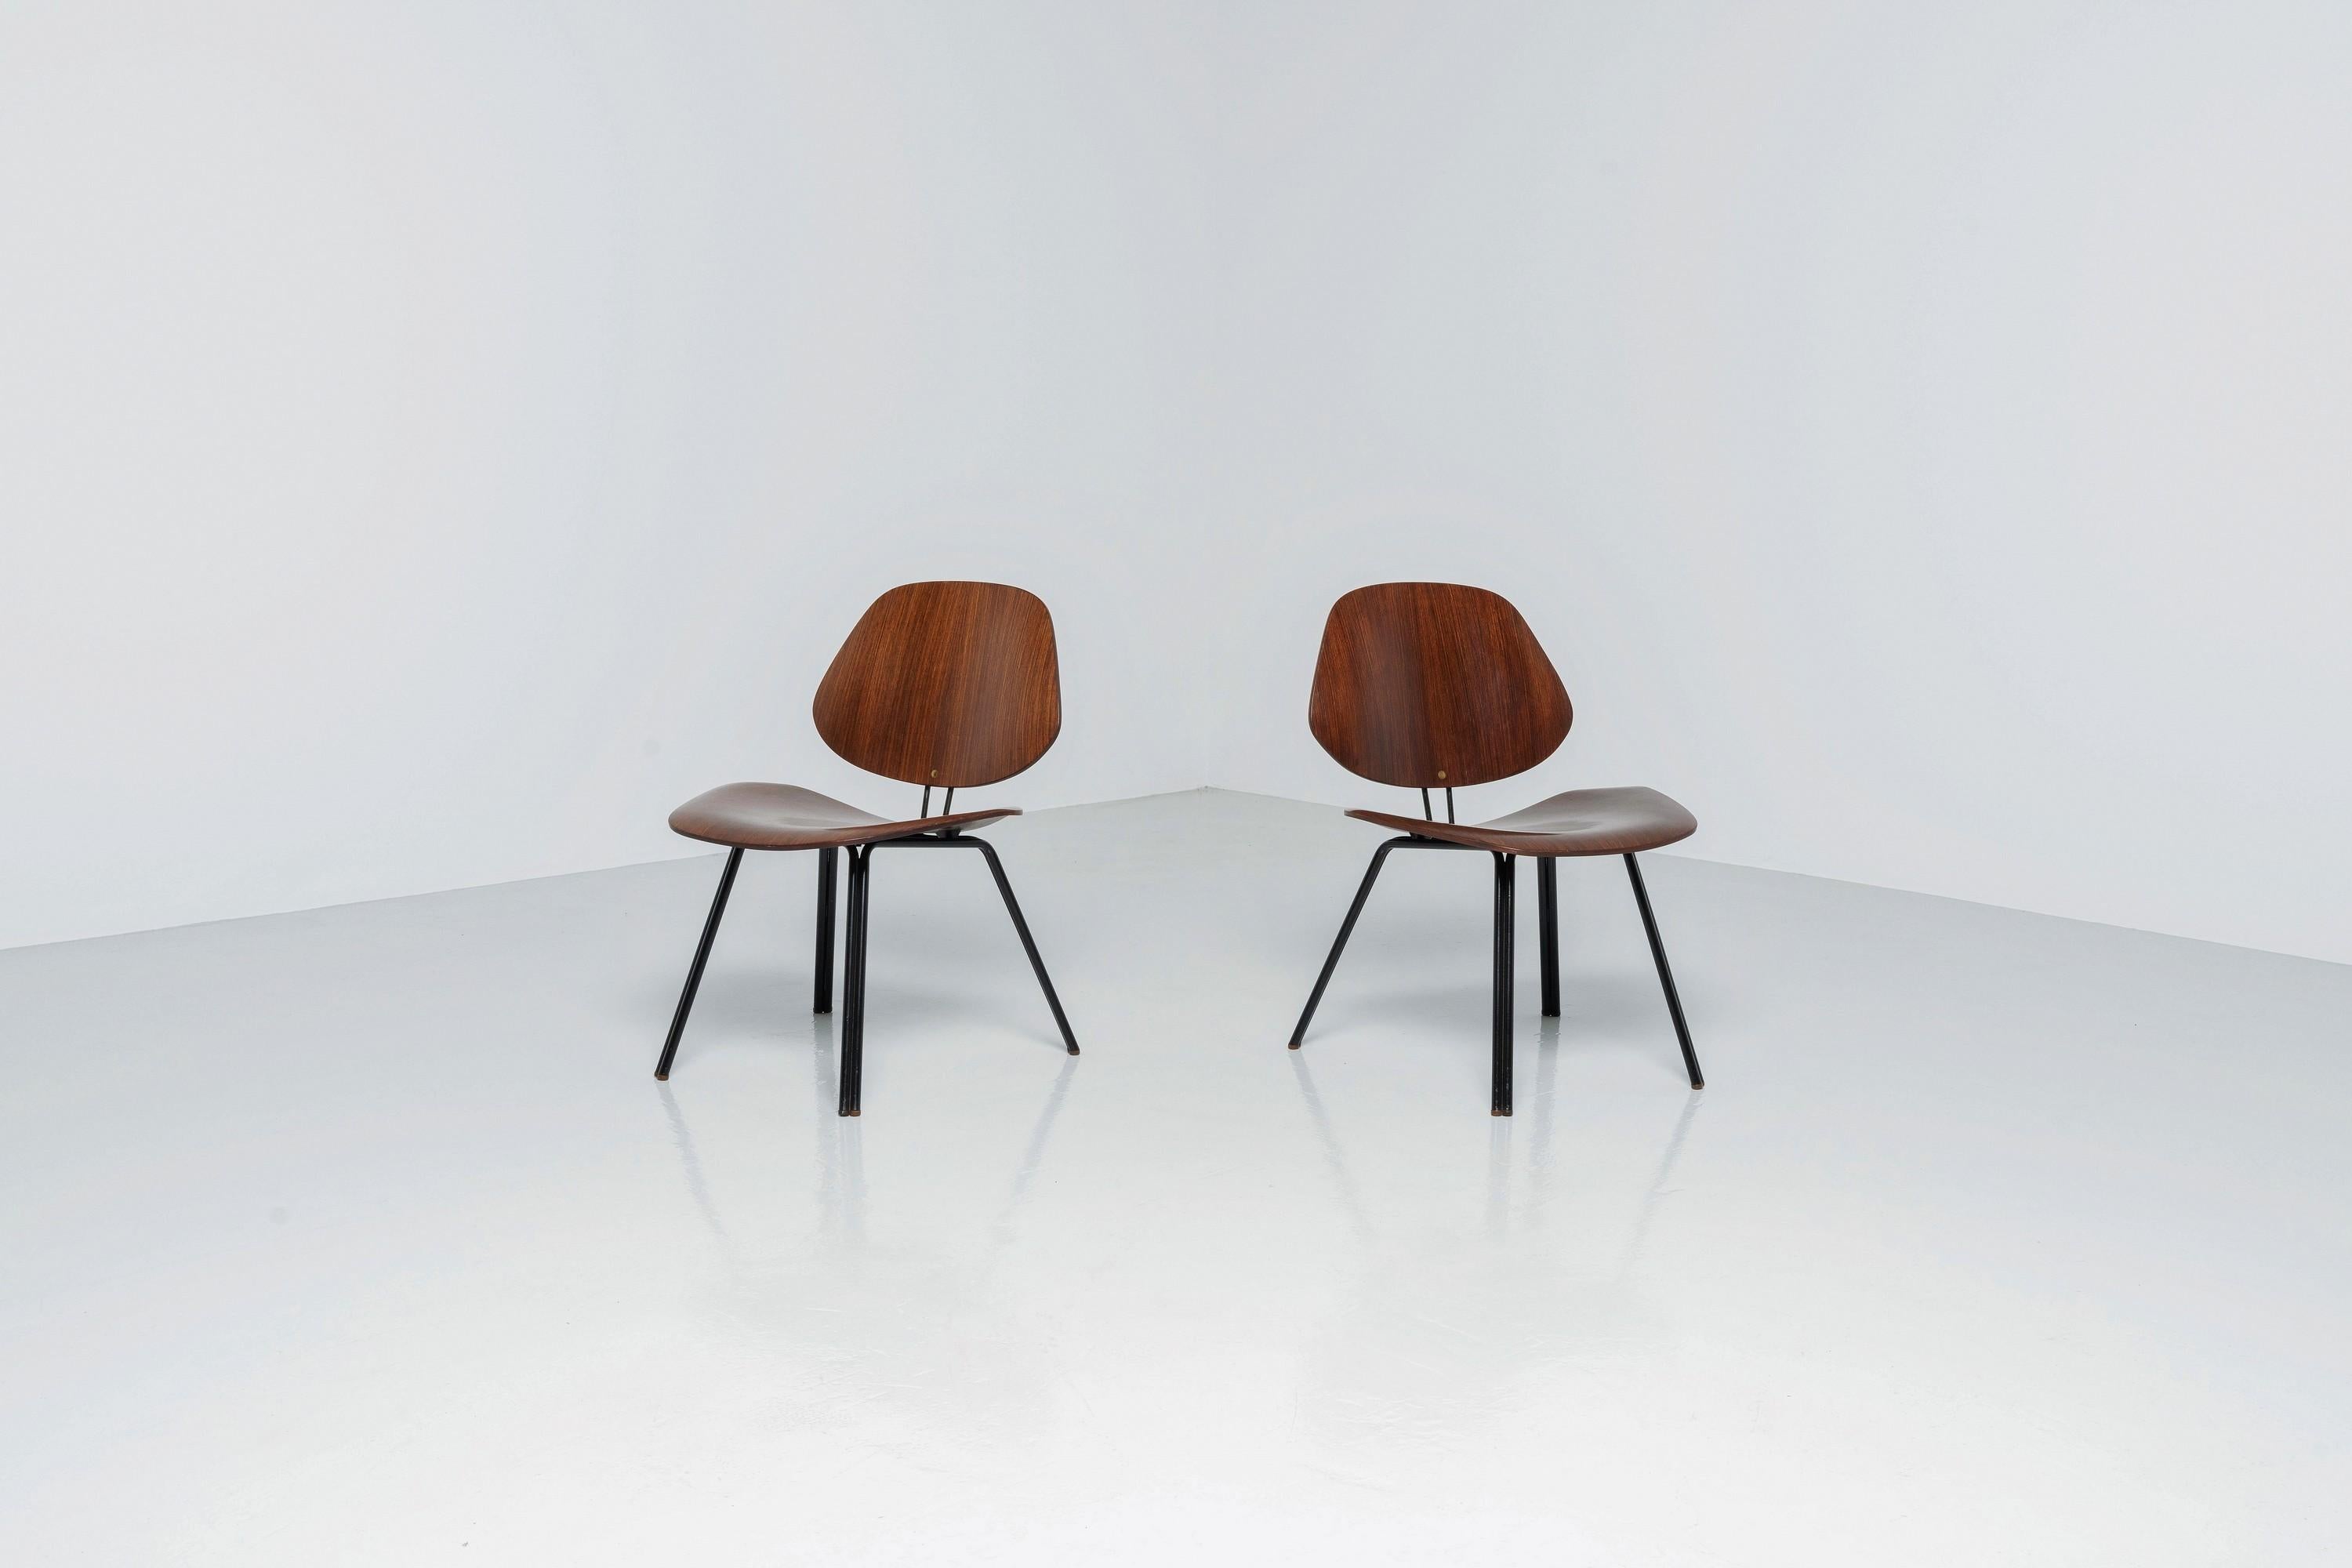 Magnifiques chaises P31 par Osvaldo Borsani et fabriquées en Italie par Tecno en 1957. Les chaises sont en parfait état d'origine et présentent une merveilleuse patine, ce qui ne fait que leur donner de la valeur. Ces deux chaises sont marquées de